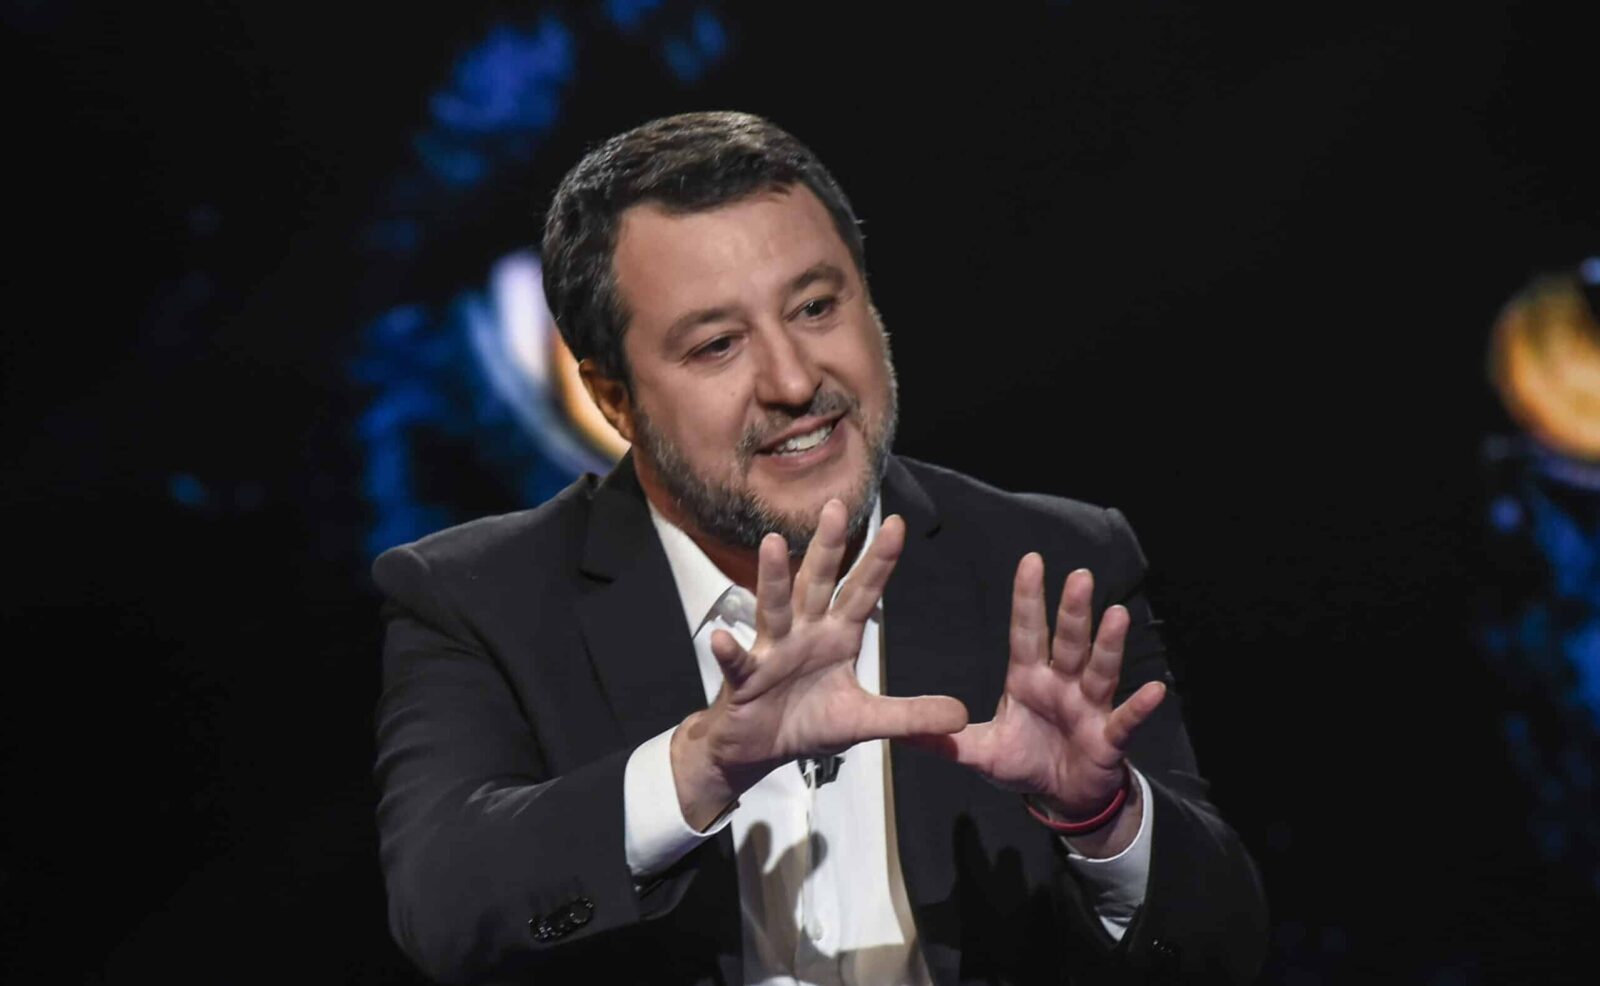 La proposta di pace edilizia di Salvini ha spiazzato i suoi alleati